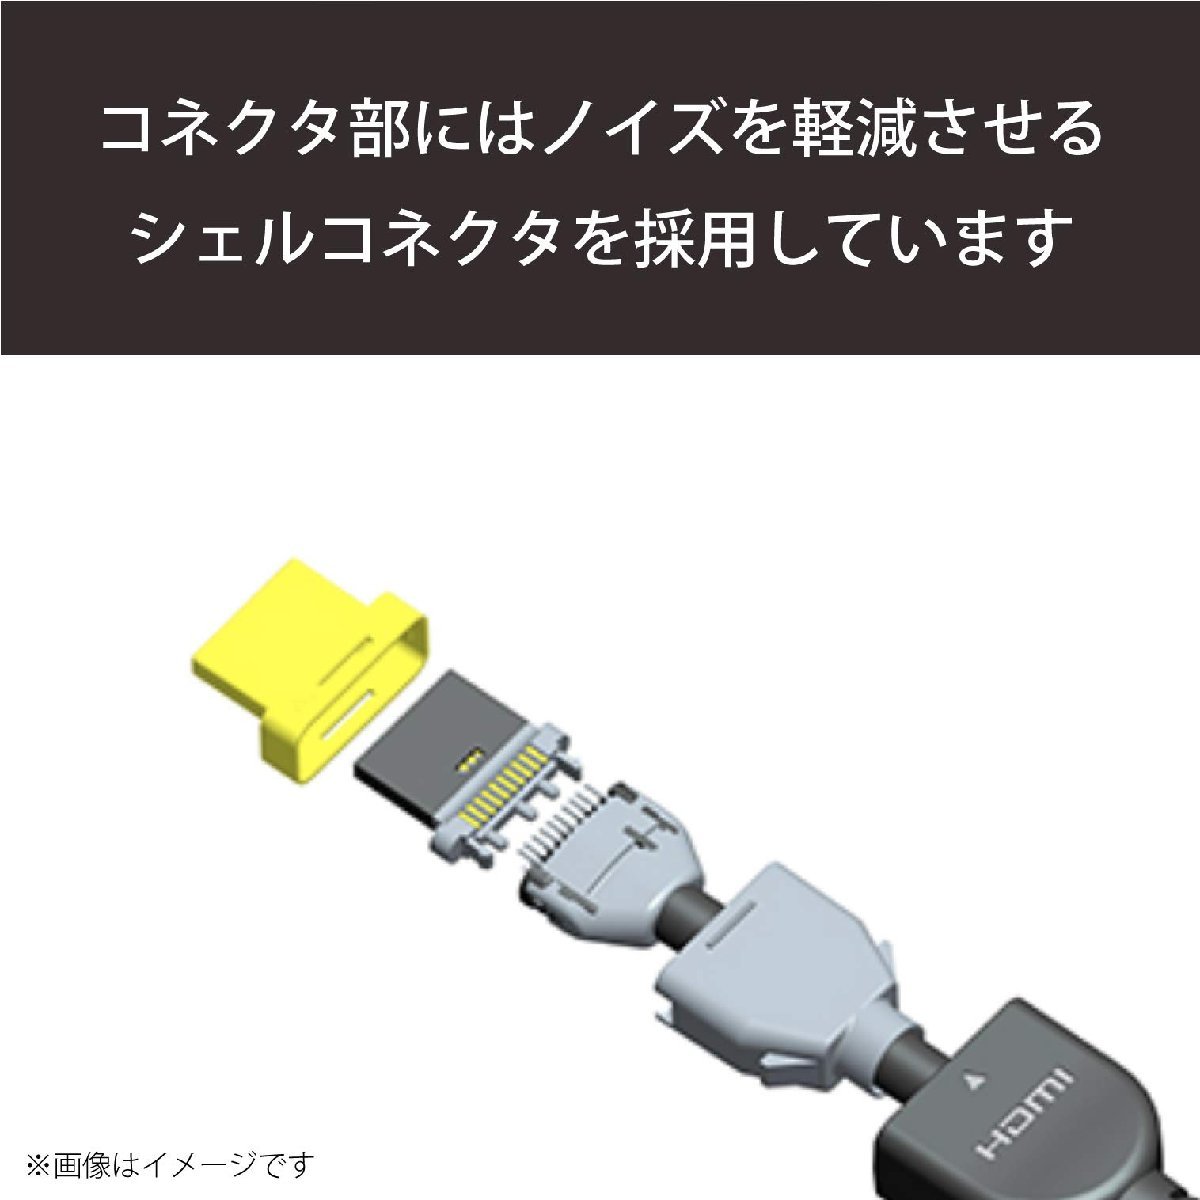  бесплатная доставка * Elecom micro HDMI кабель 1.5m 4K × 2K соответствует черный DH-HD14EU15BK